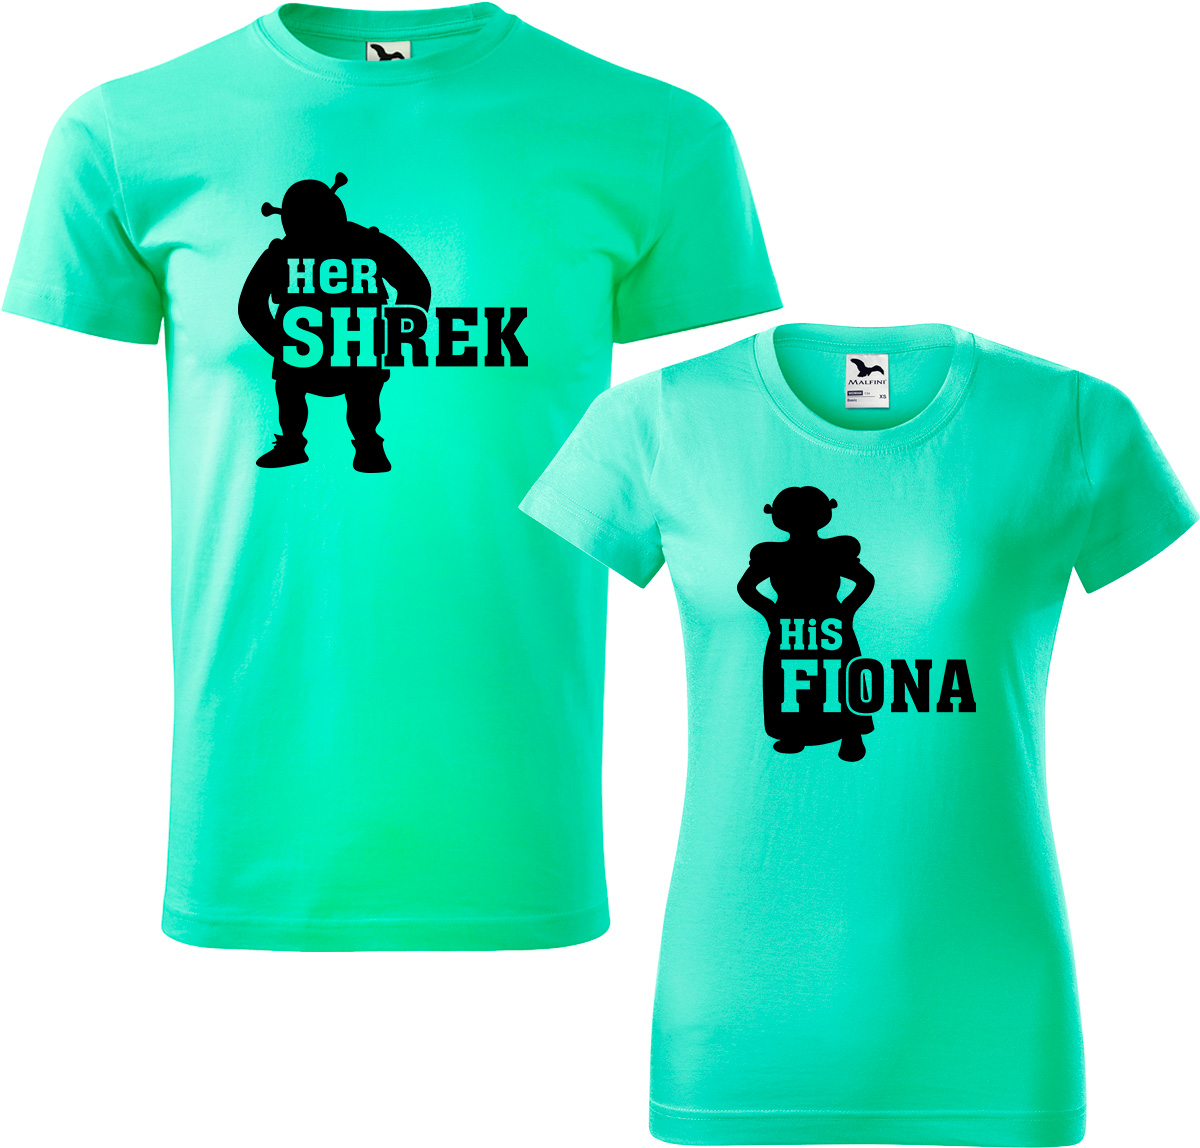 Trička pro páry - Shrek a Fiona Barva: Mátová (95), Velikost dámské tričko: S, Velikost pánské tričko: 4XL